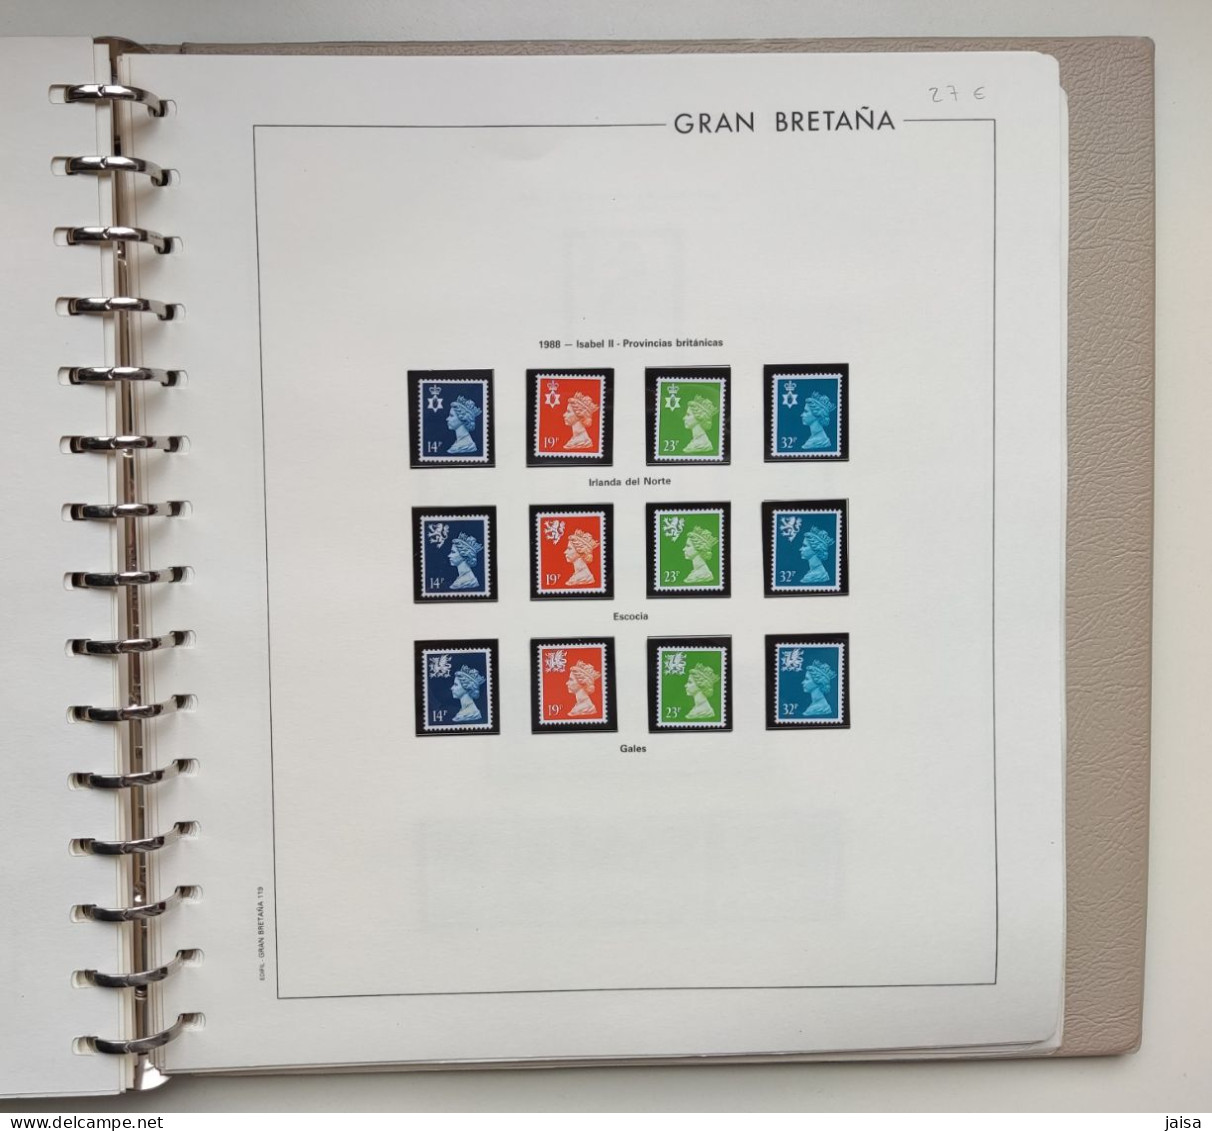 GRAN BRETAÑA. Años 1976 - 1989. Album, hojas-suplementos y sellos.